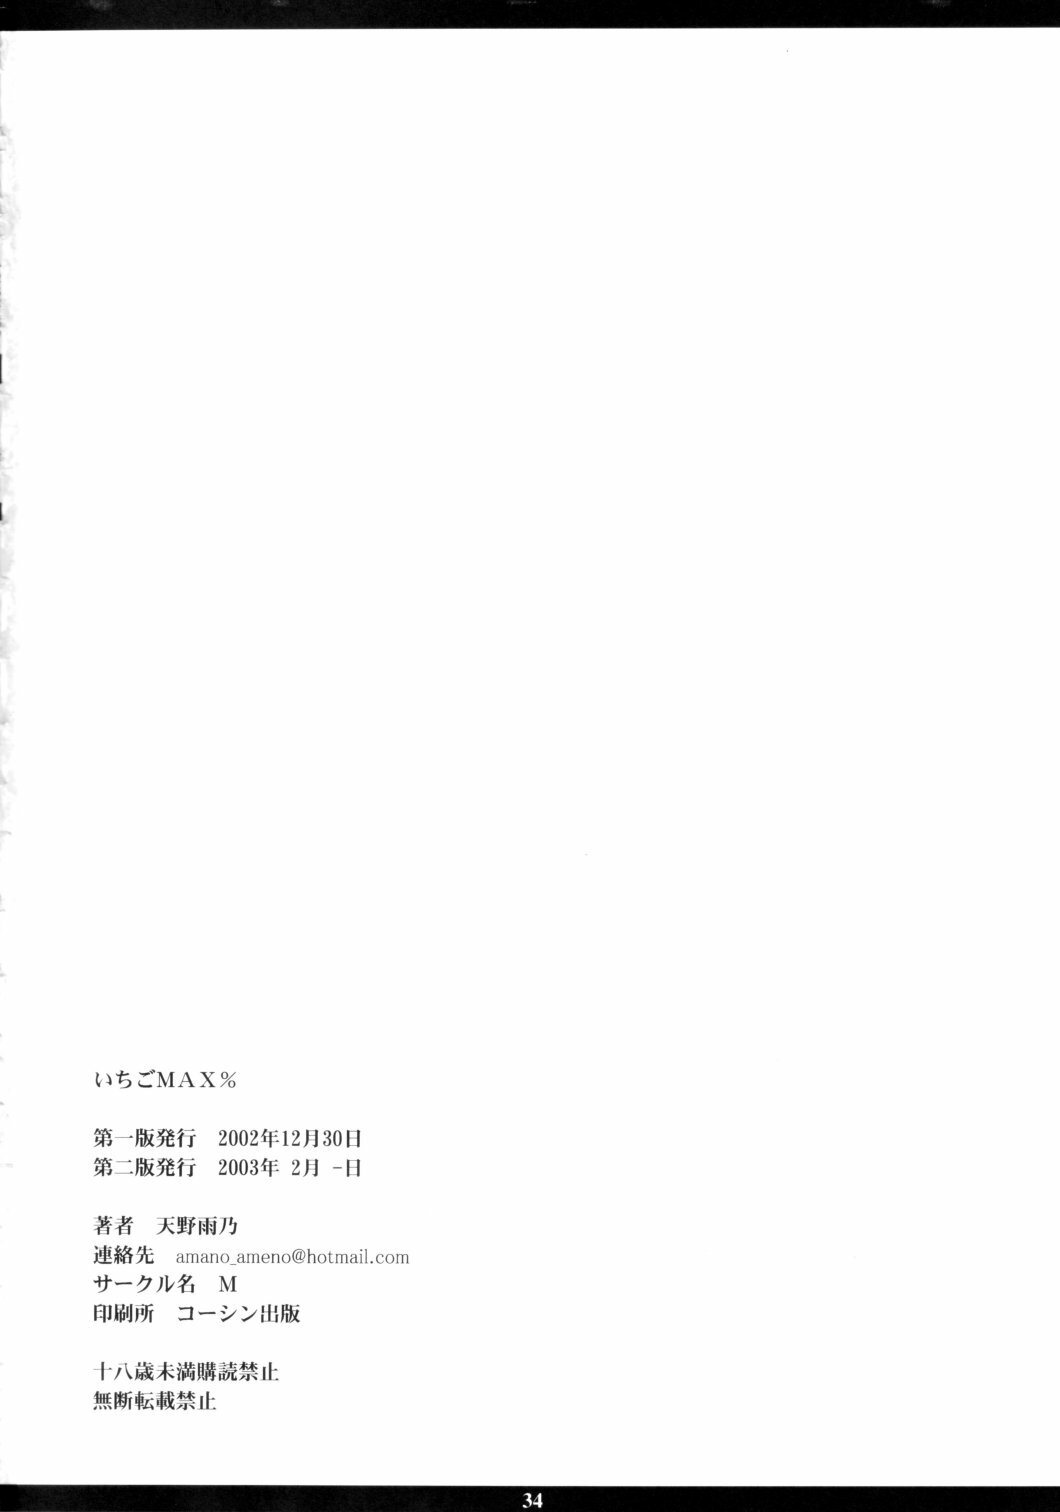 [M (Amano Ameno)] Ichigo MAX% (Ichigo 100%) [2003-02] page 33 full